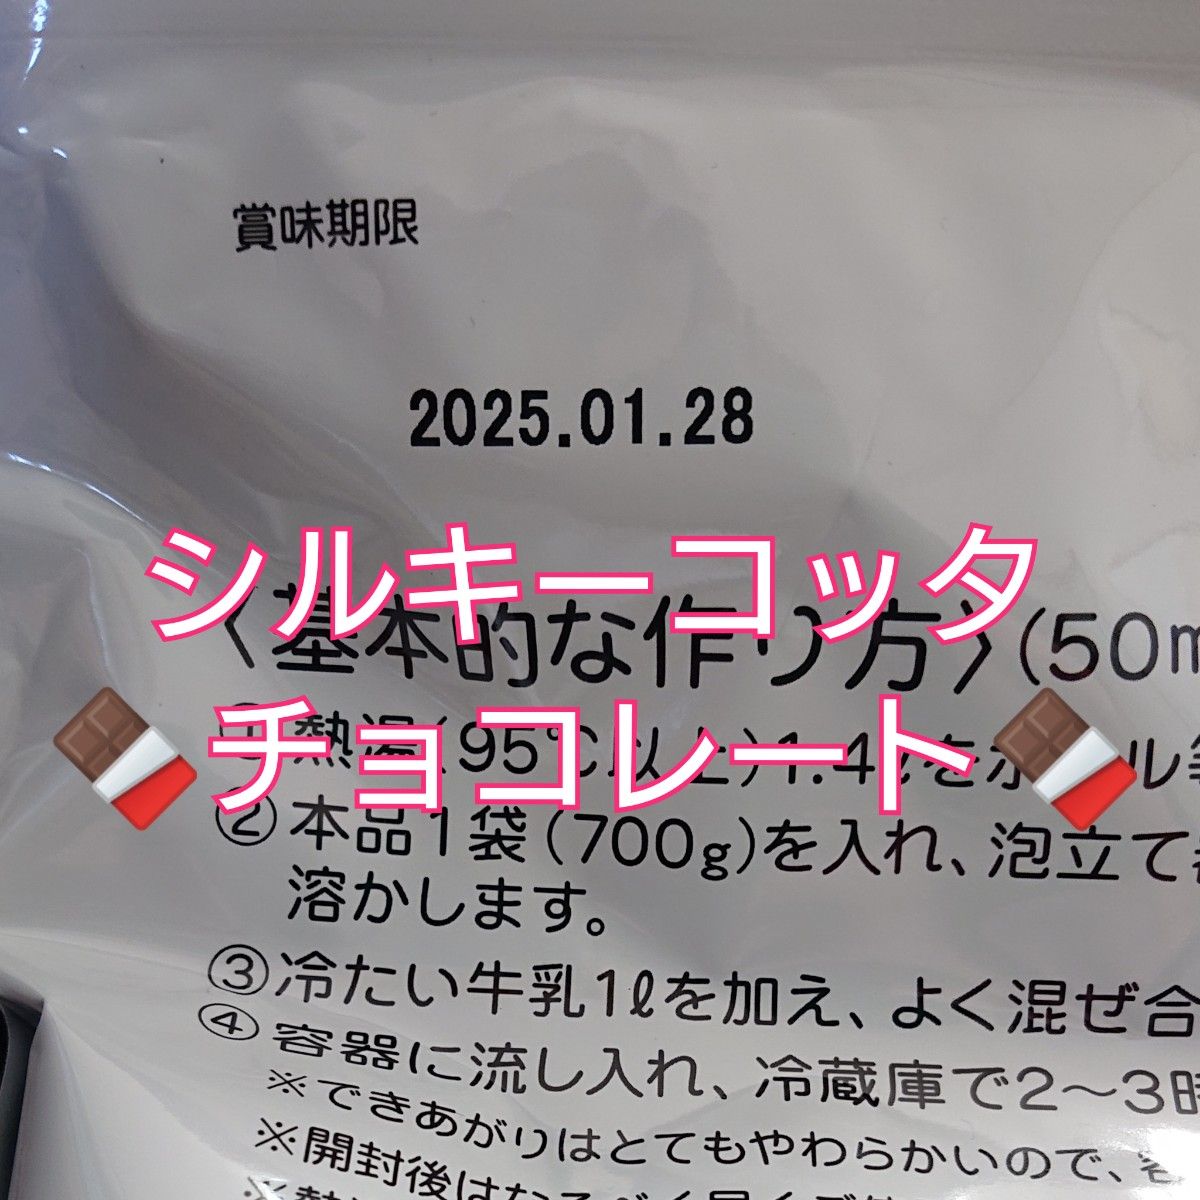 【イナショク】シルキーコッタ チョコレート 700g 50ml-56個分 業務用